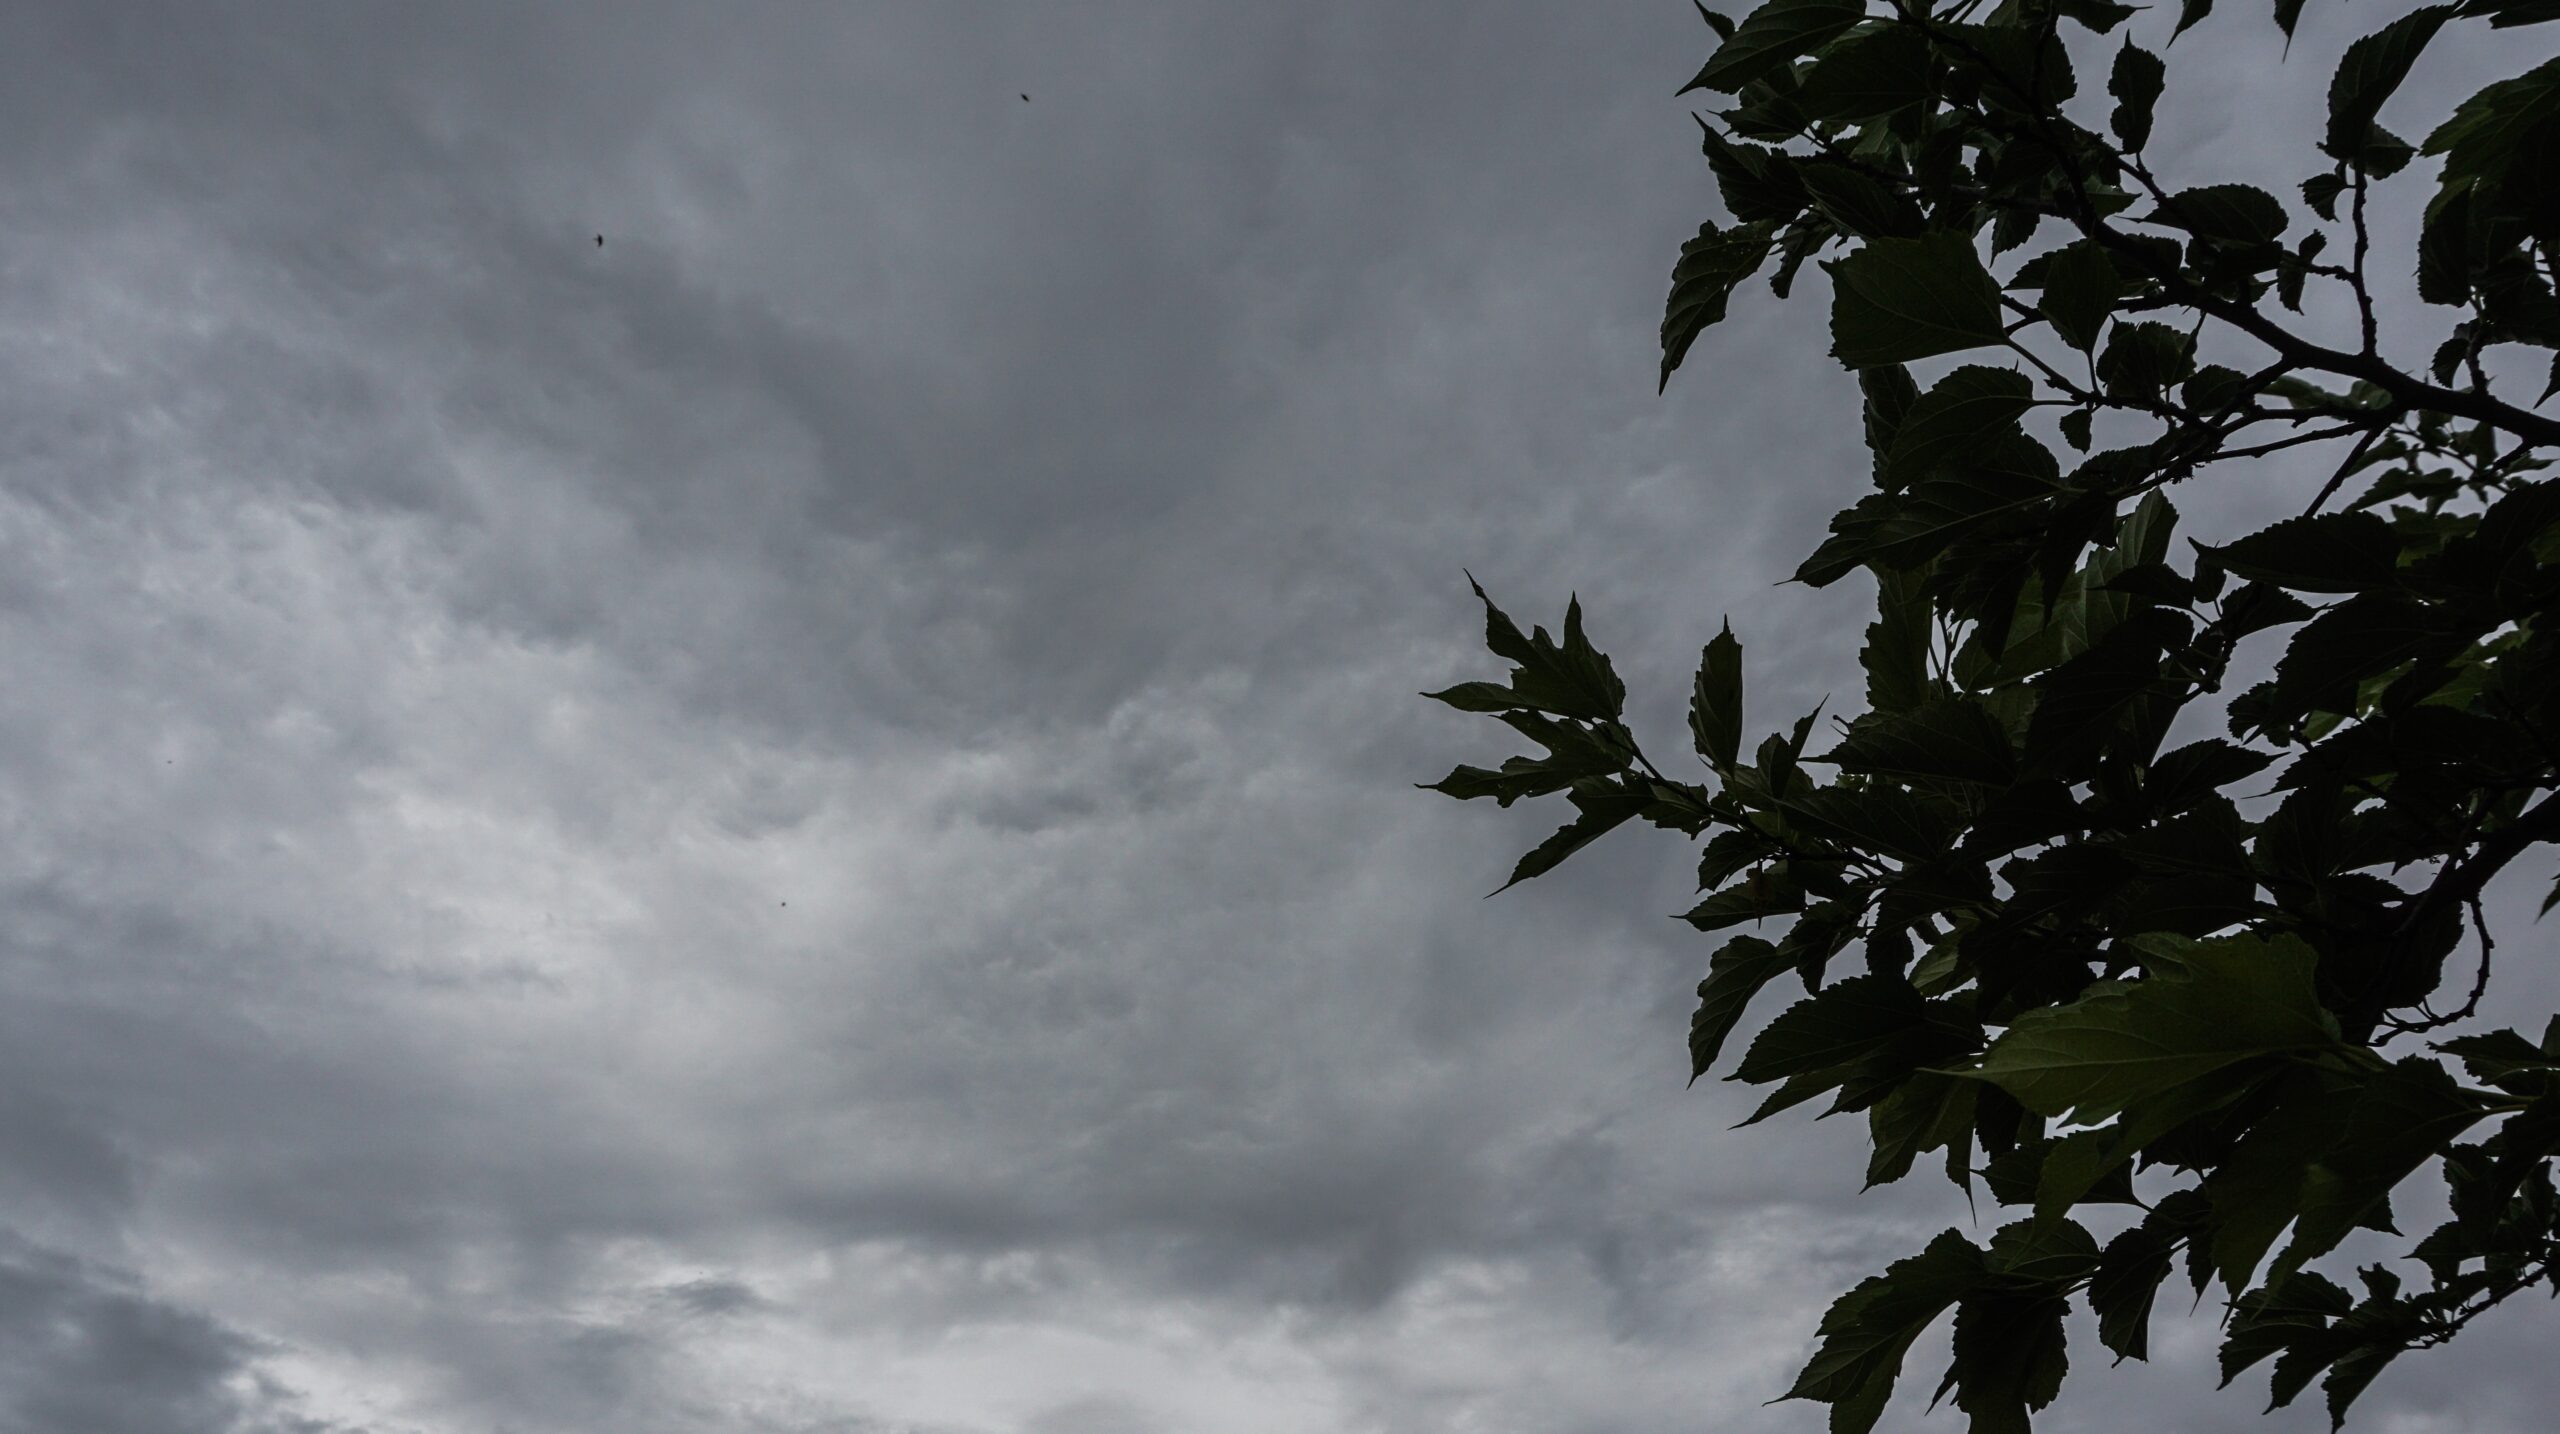 Ο καιρός με την Ν. Ζιακοπούλου: Με αρκετές καταιγίδες και μικρή πτώση της θερμοκρασίας το Σάββατο